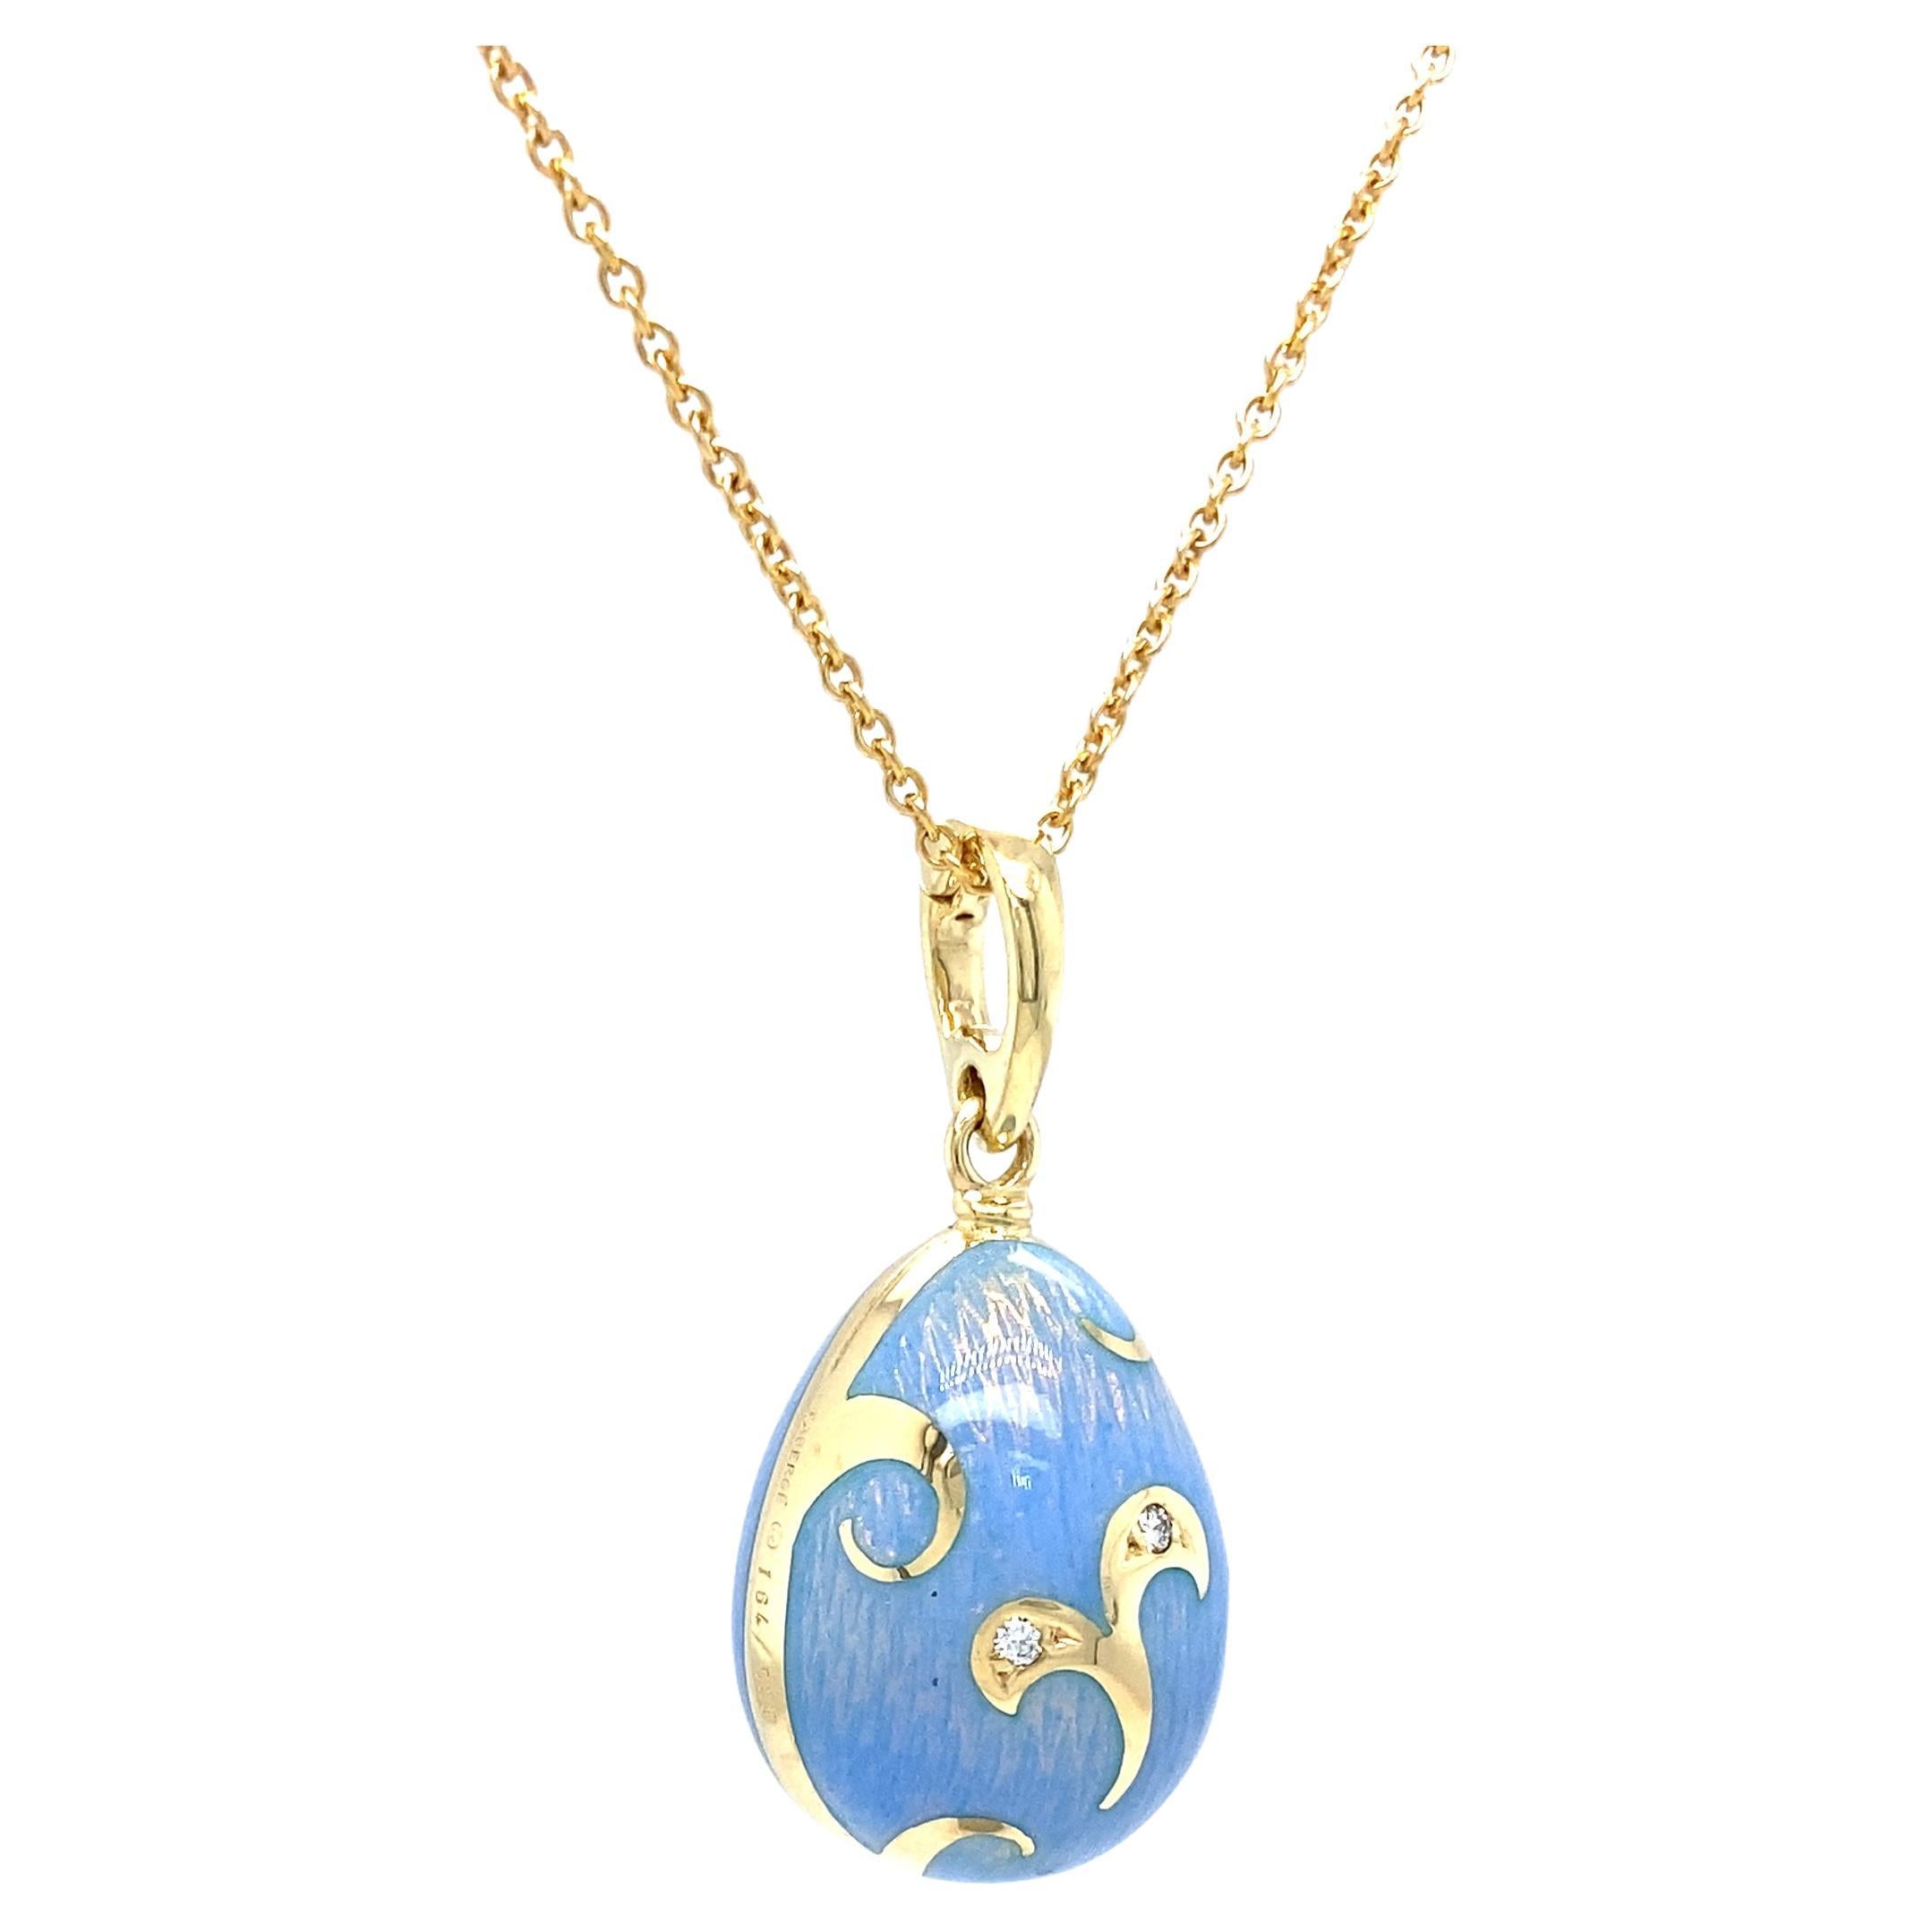 Brilliant Cut Fabergé Egg Pendant Blue Opalescent Enamel 18k Yellow Gold 2 Diamonds Rocaille For Sale